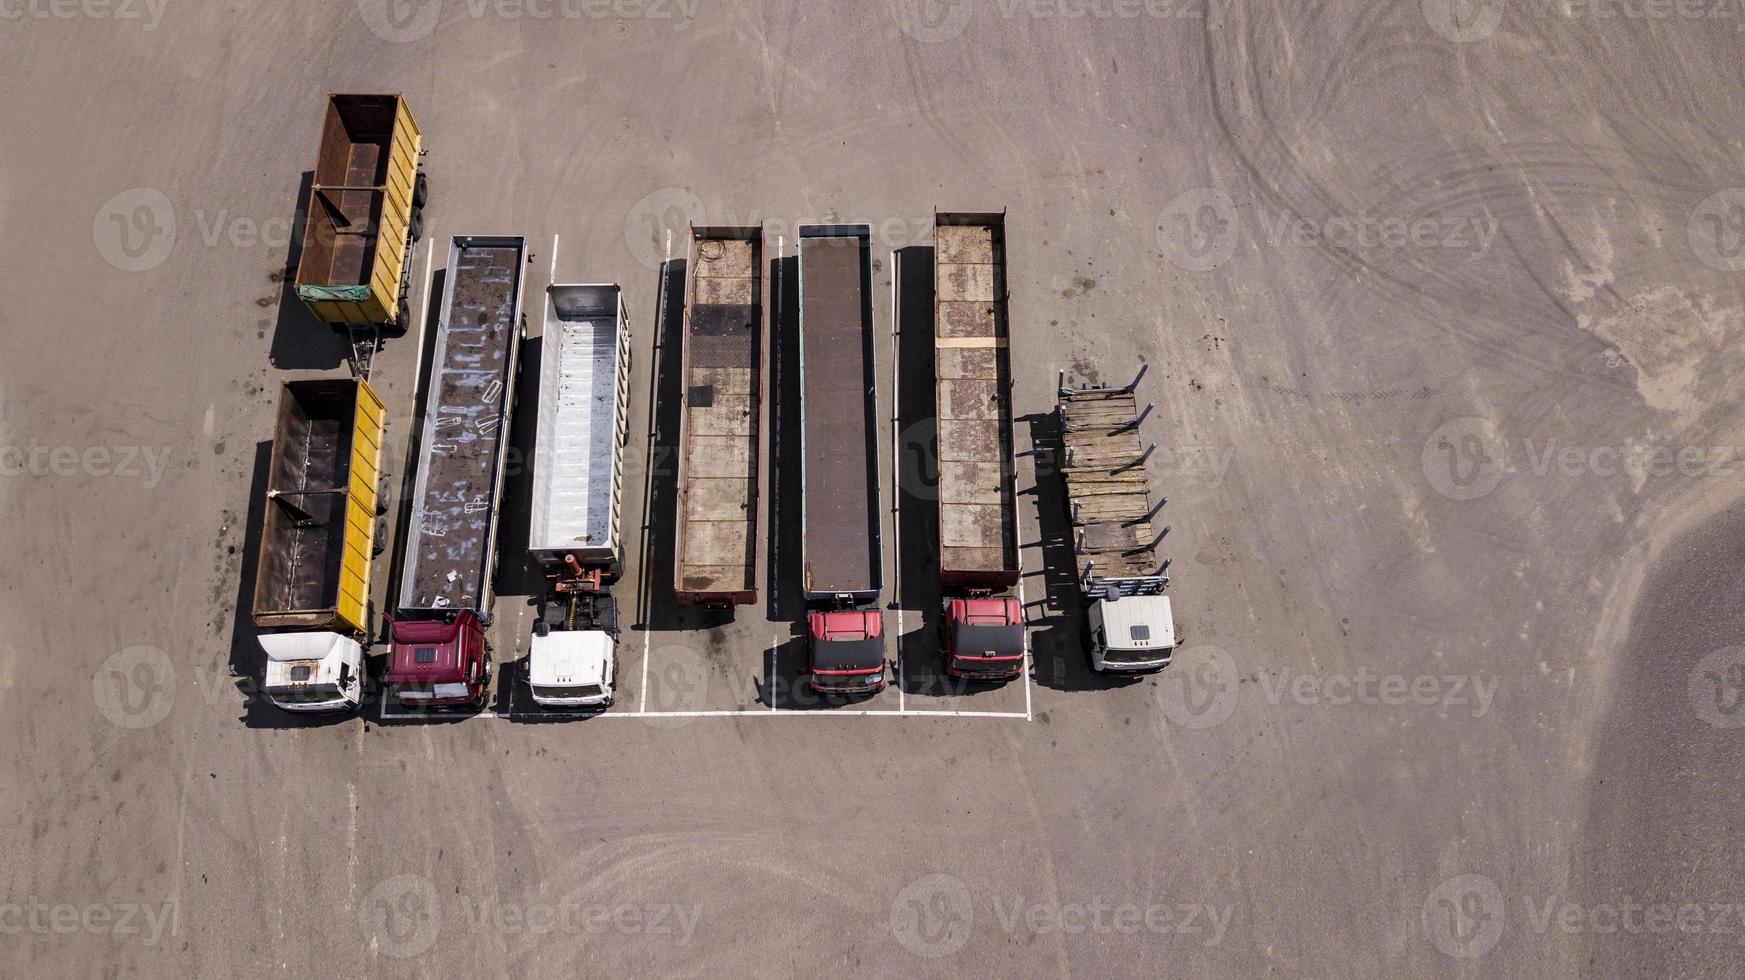 vrachtwagens staan op een rij parkeerplaats - bovenaanzicht vanaf de drone foto